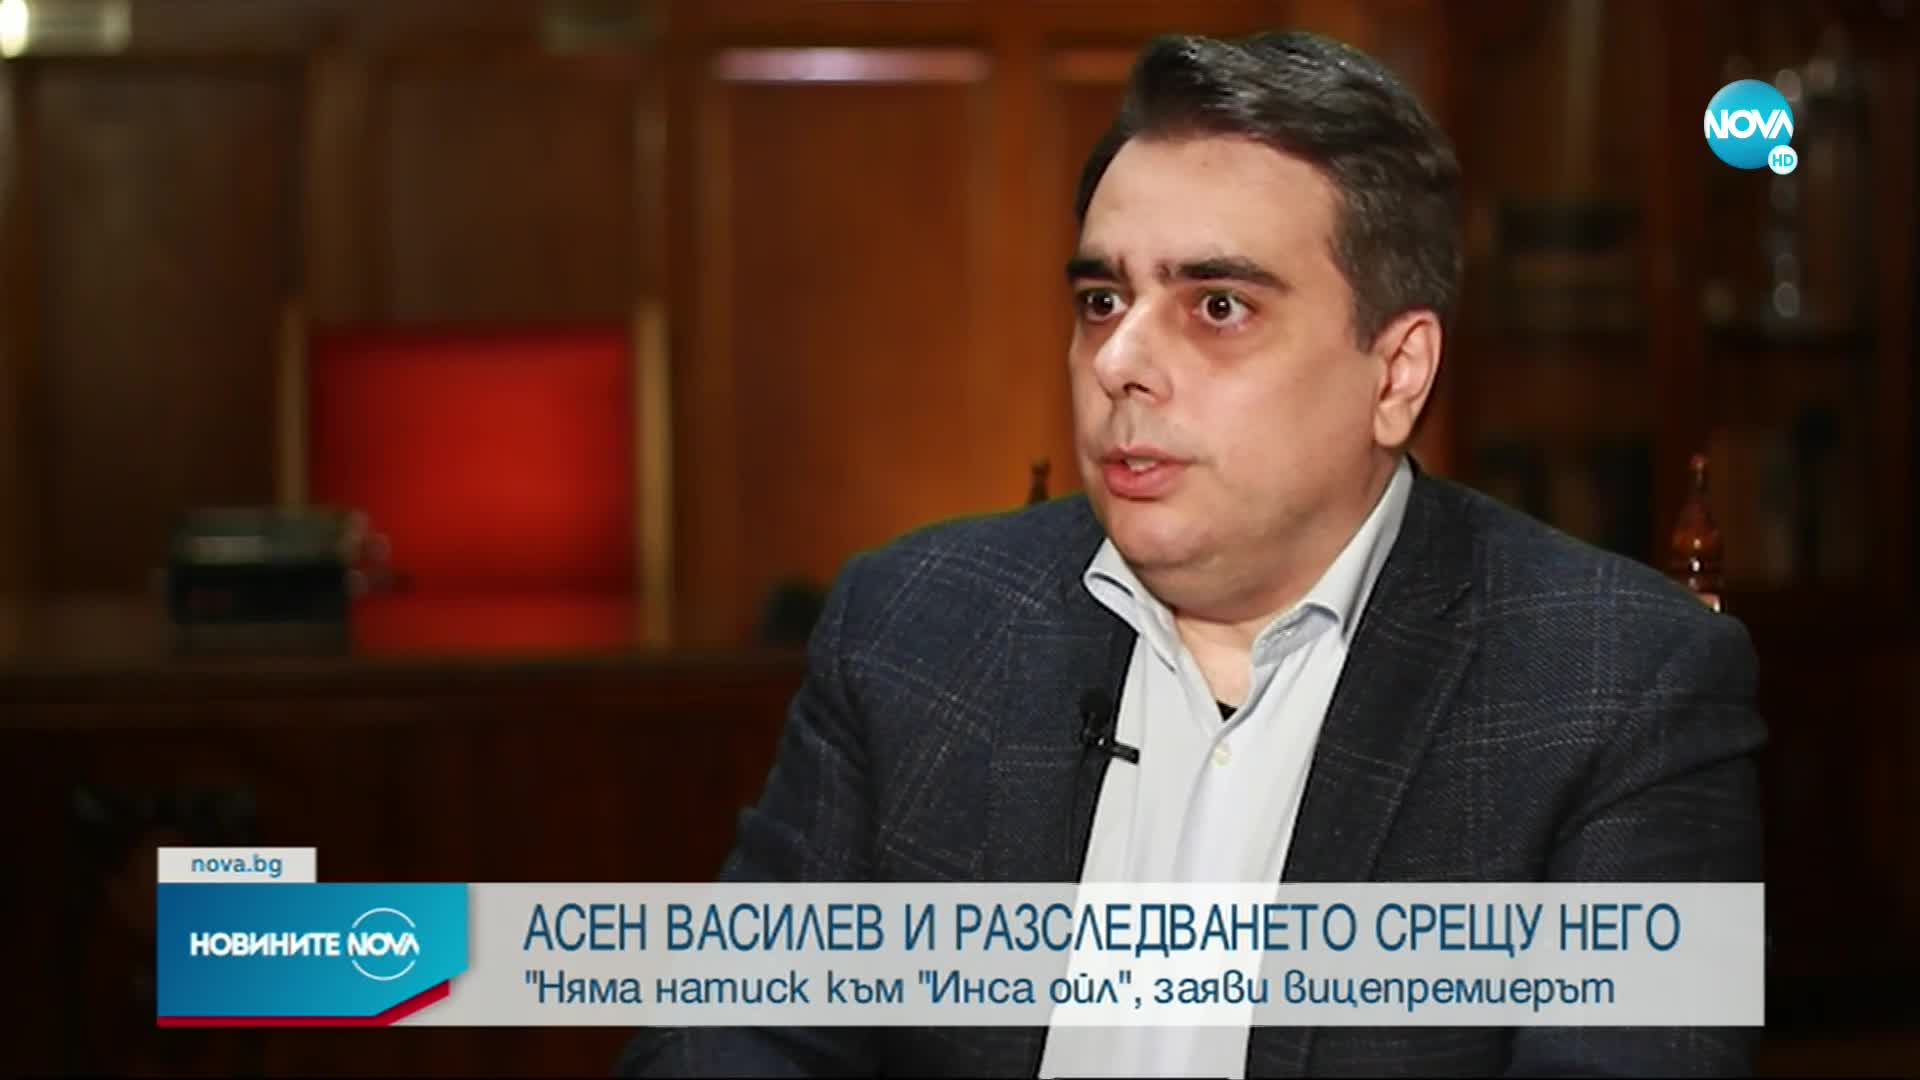 Василев: Атаката към мен е нескопосана и с неверни твърдения